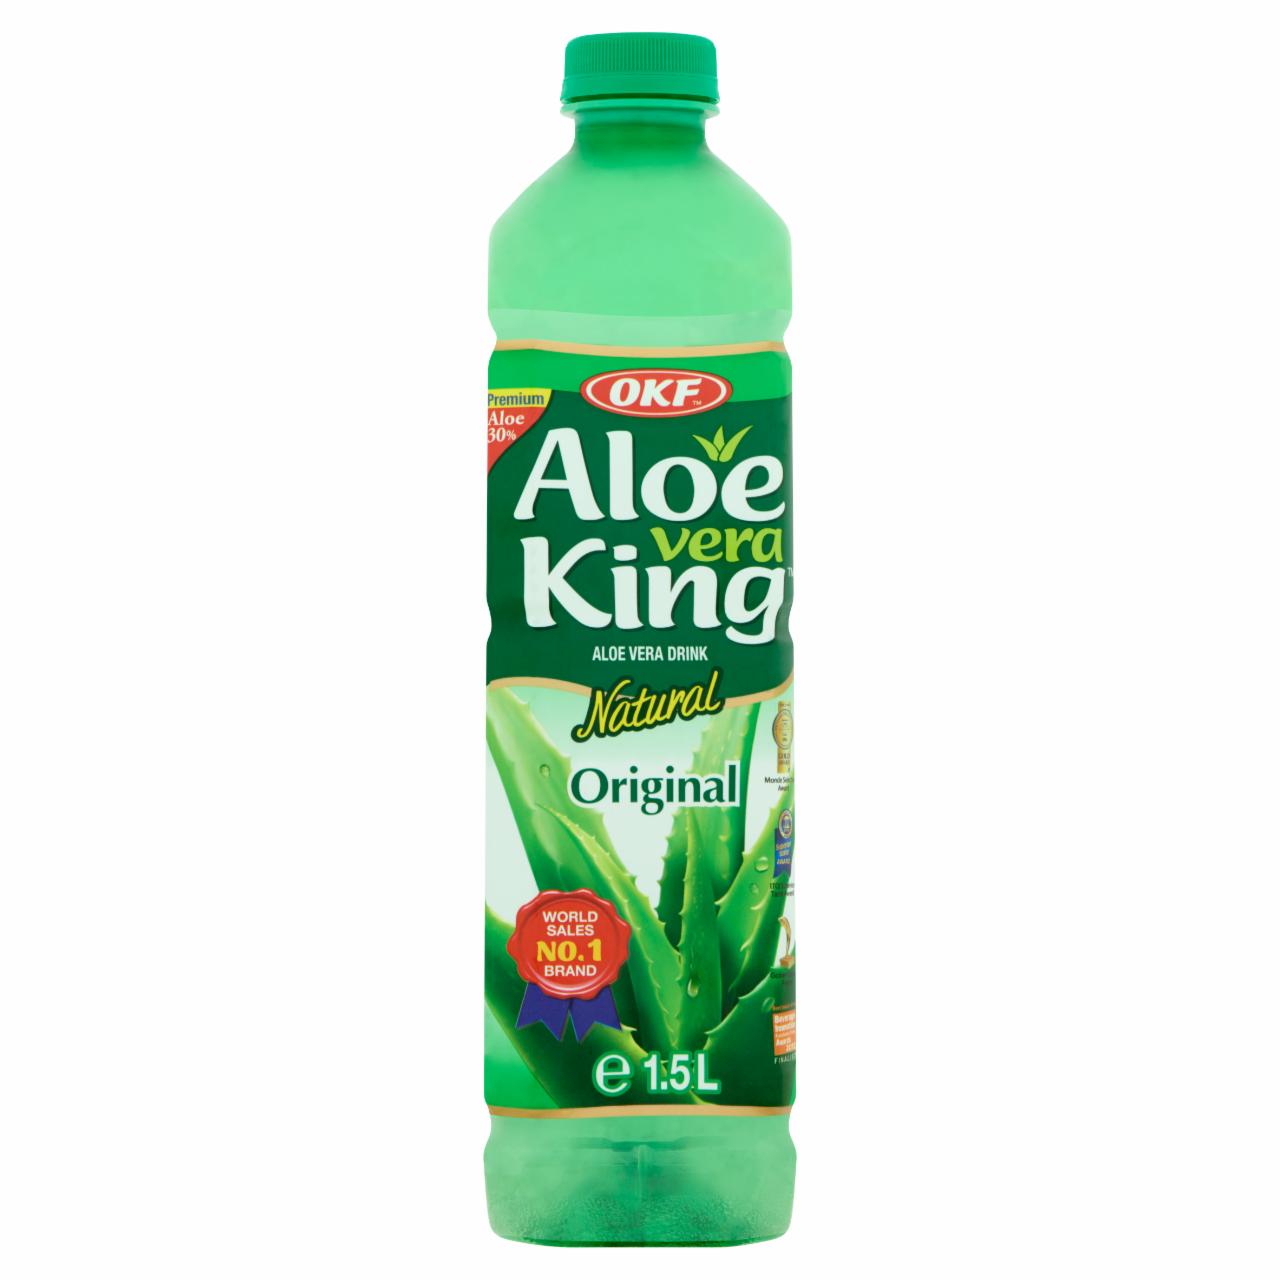 Képek - OKF Aloe Vera King szőlő ízű üdítőital aloe vera darabokkal 1,5 l